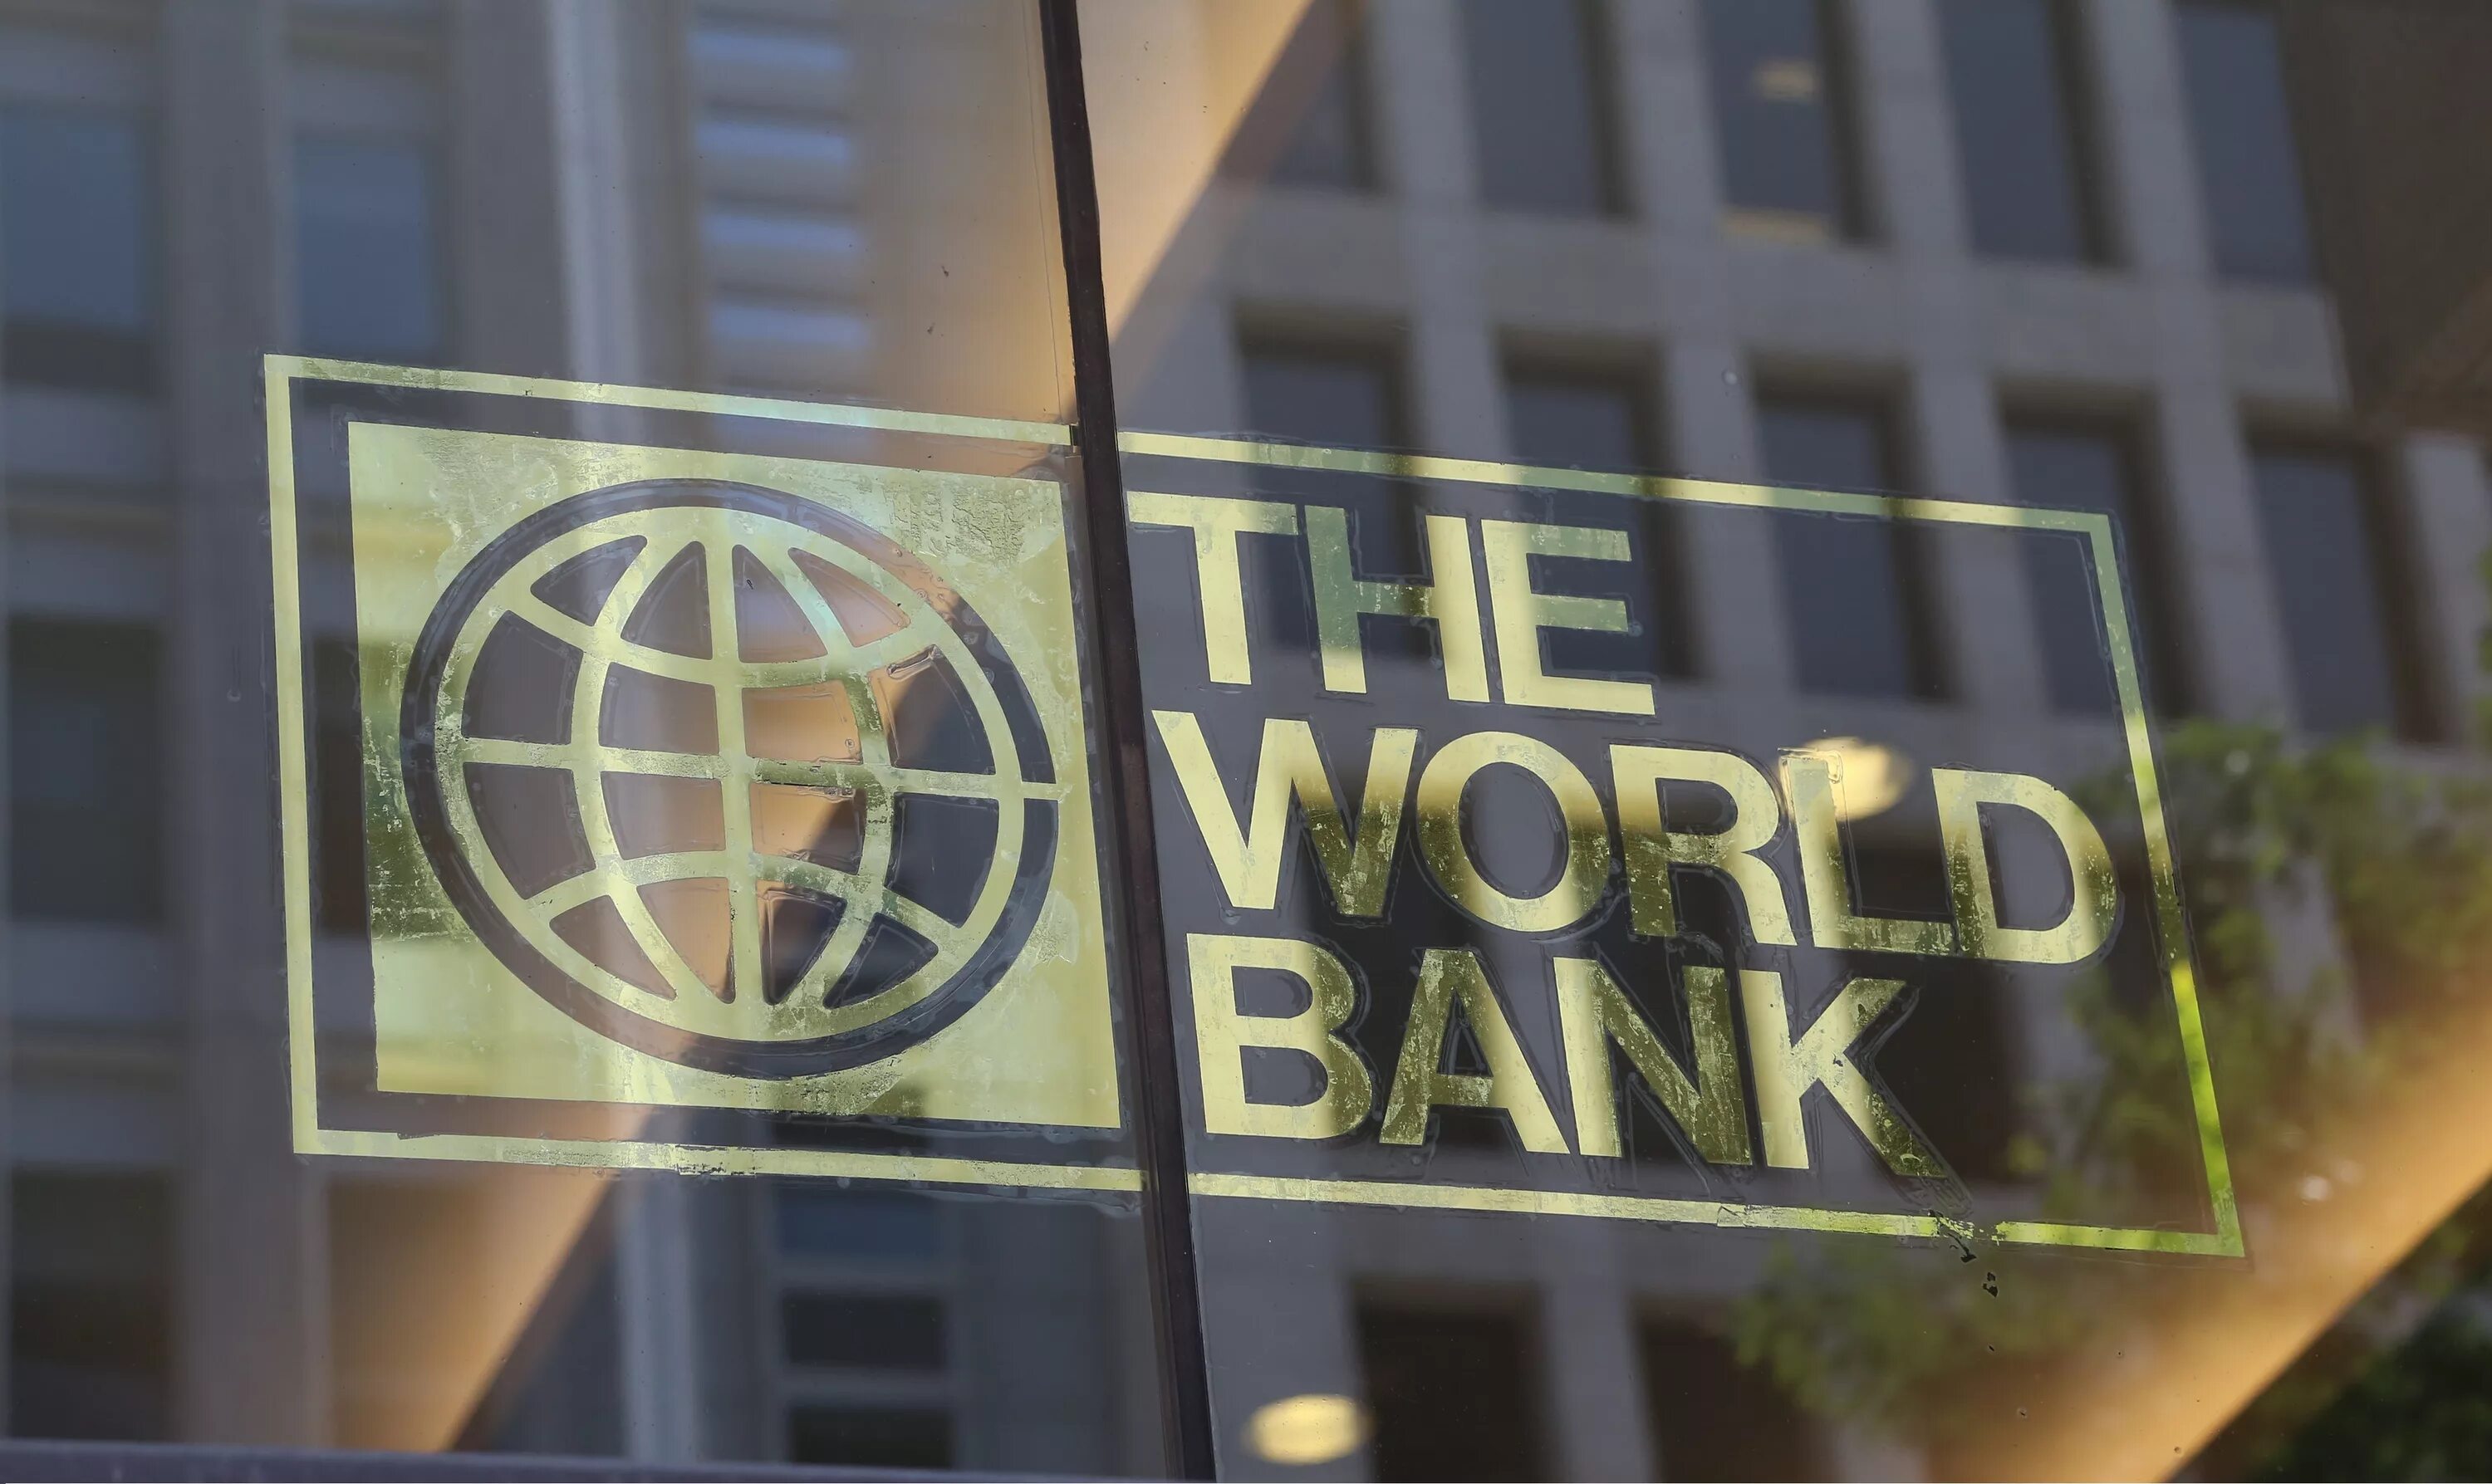 Ups bank. Всемирный банк. Всемирный мировой банк. Международный банк. Всемирный банк США.